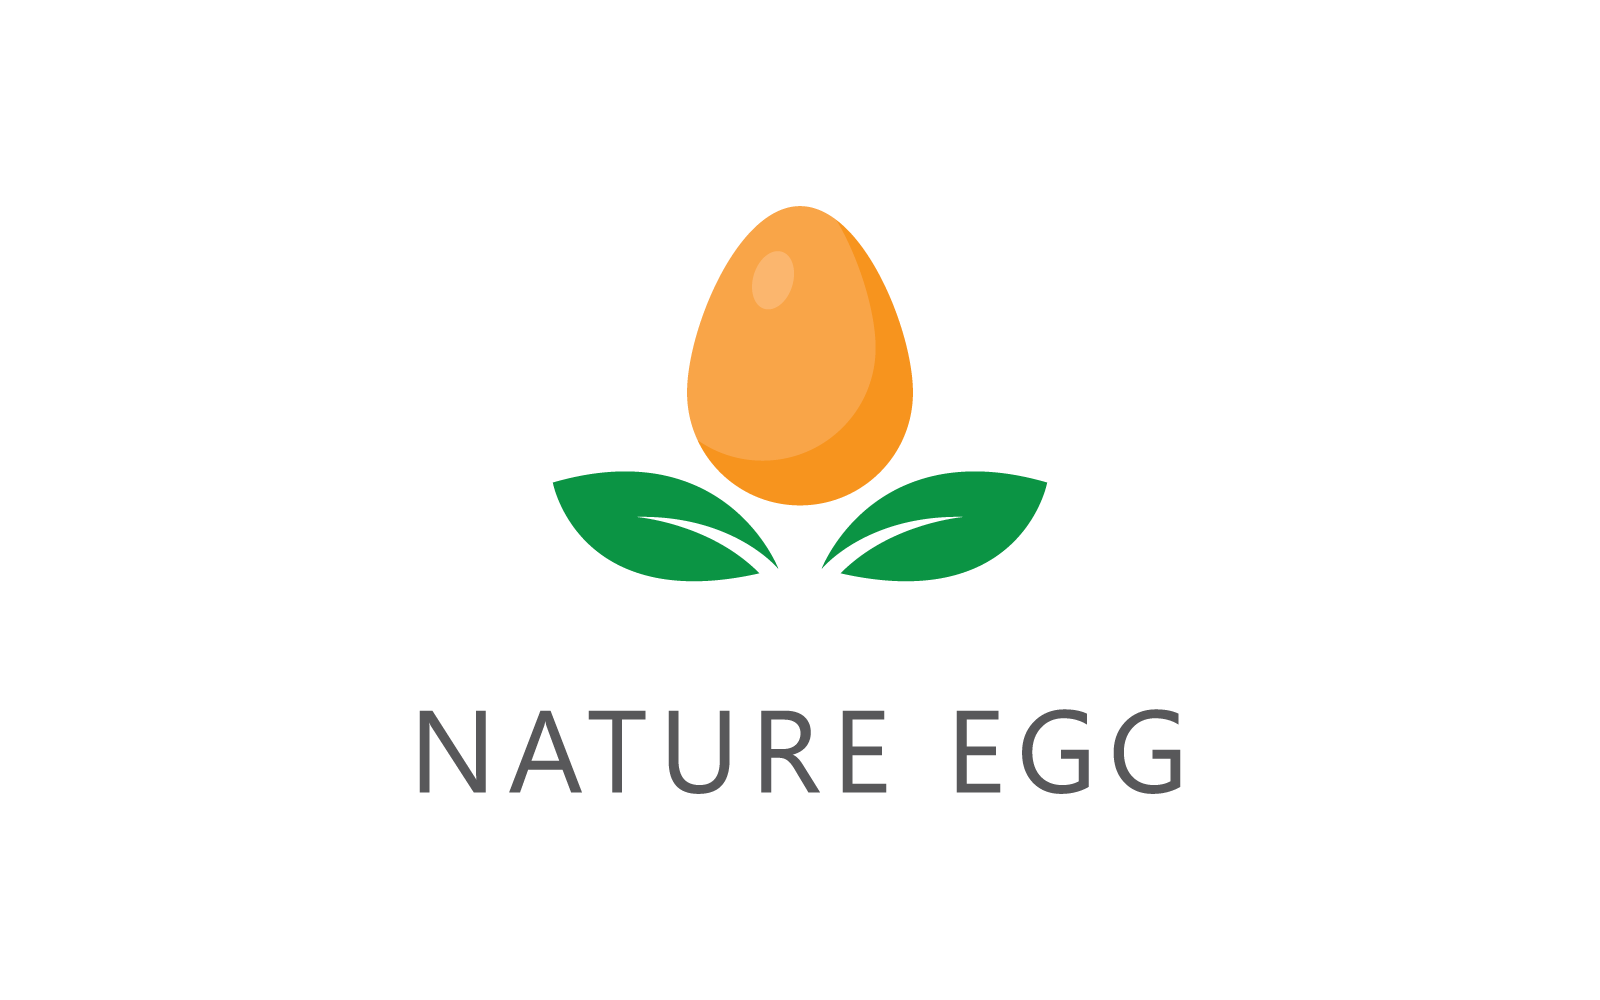 Egg and green leaf illustration logo vector flat design